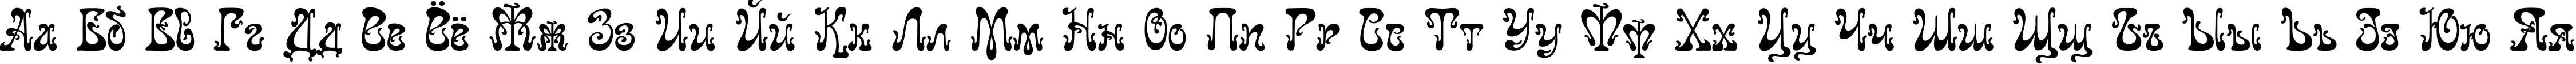 Пример написания русского алфавита шрифтом Juvelir Nouveau